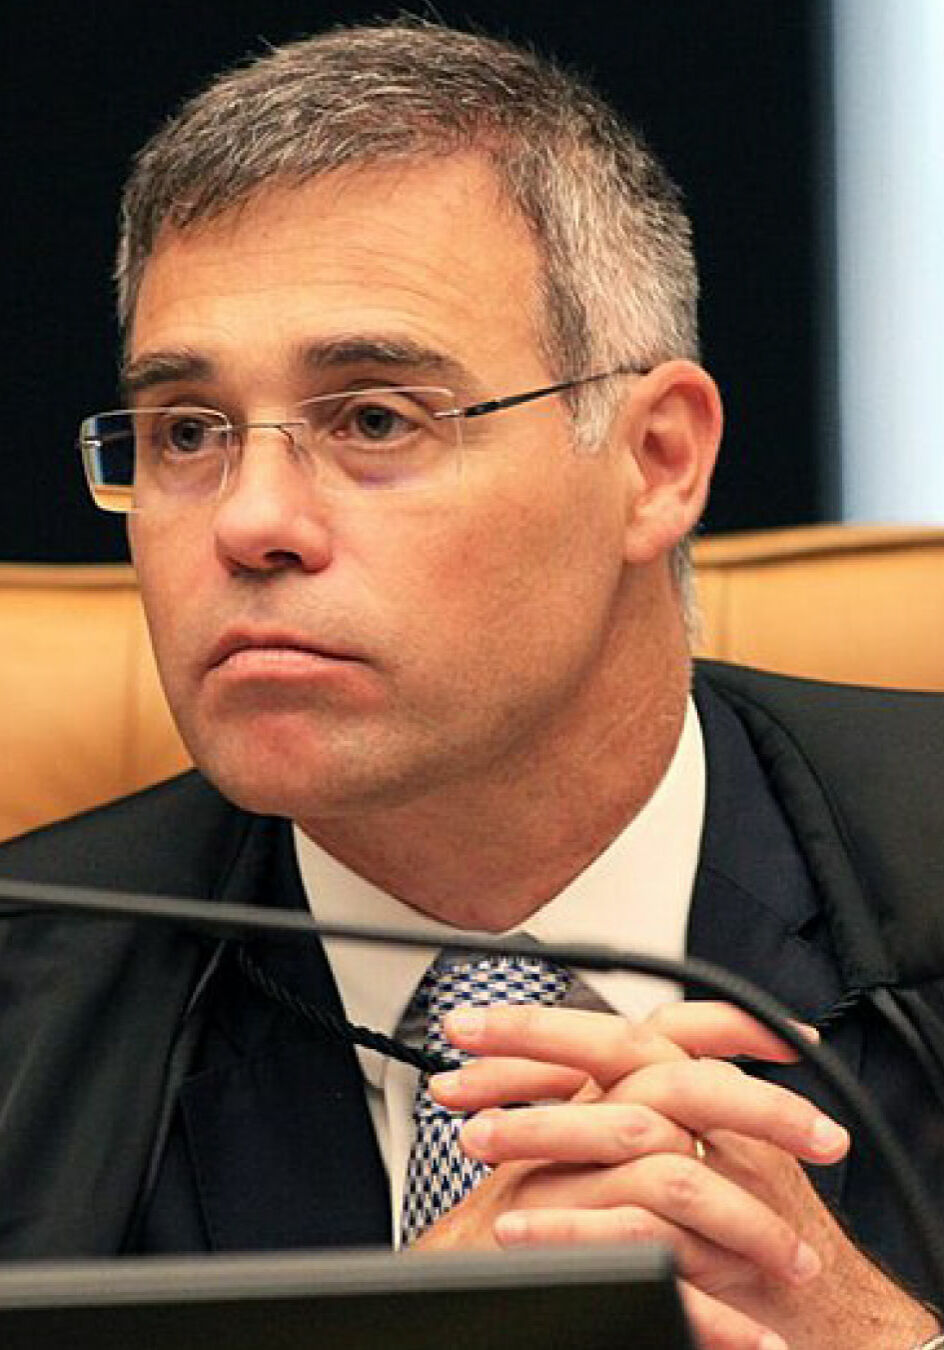 10-congresso-brasileiro-medico-juridico-e-da-saude-foto-ministro-andre-mendonca